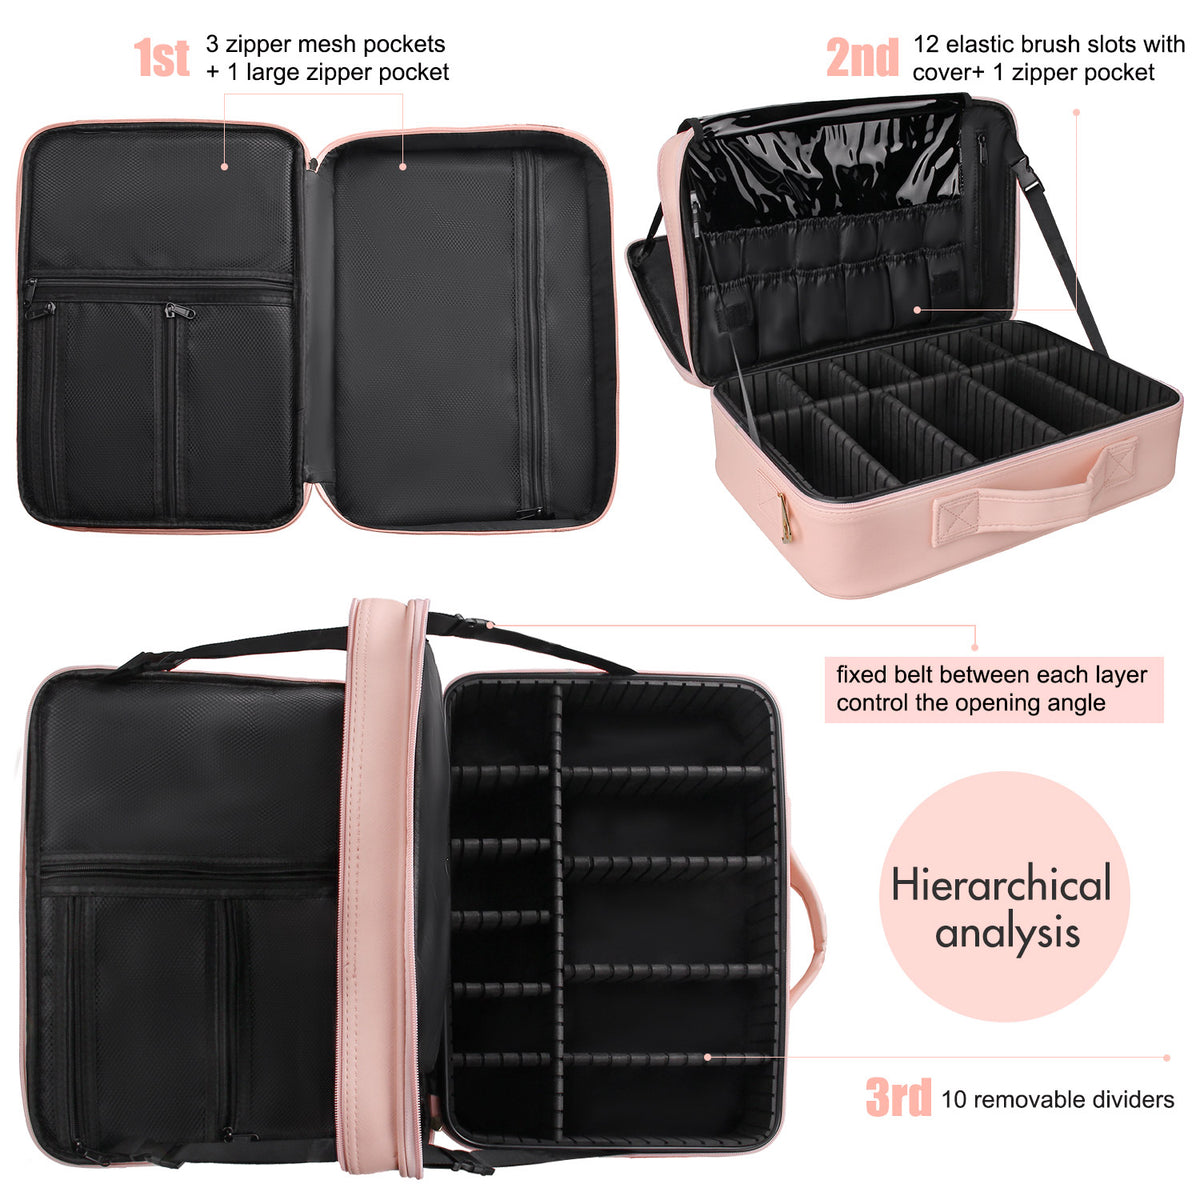 Manicure Set Makeup Case，Pink – Relavel